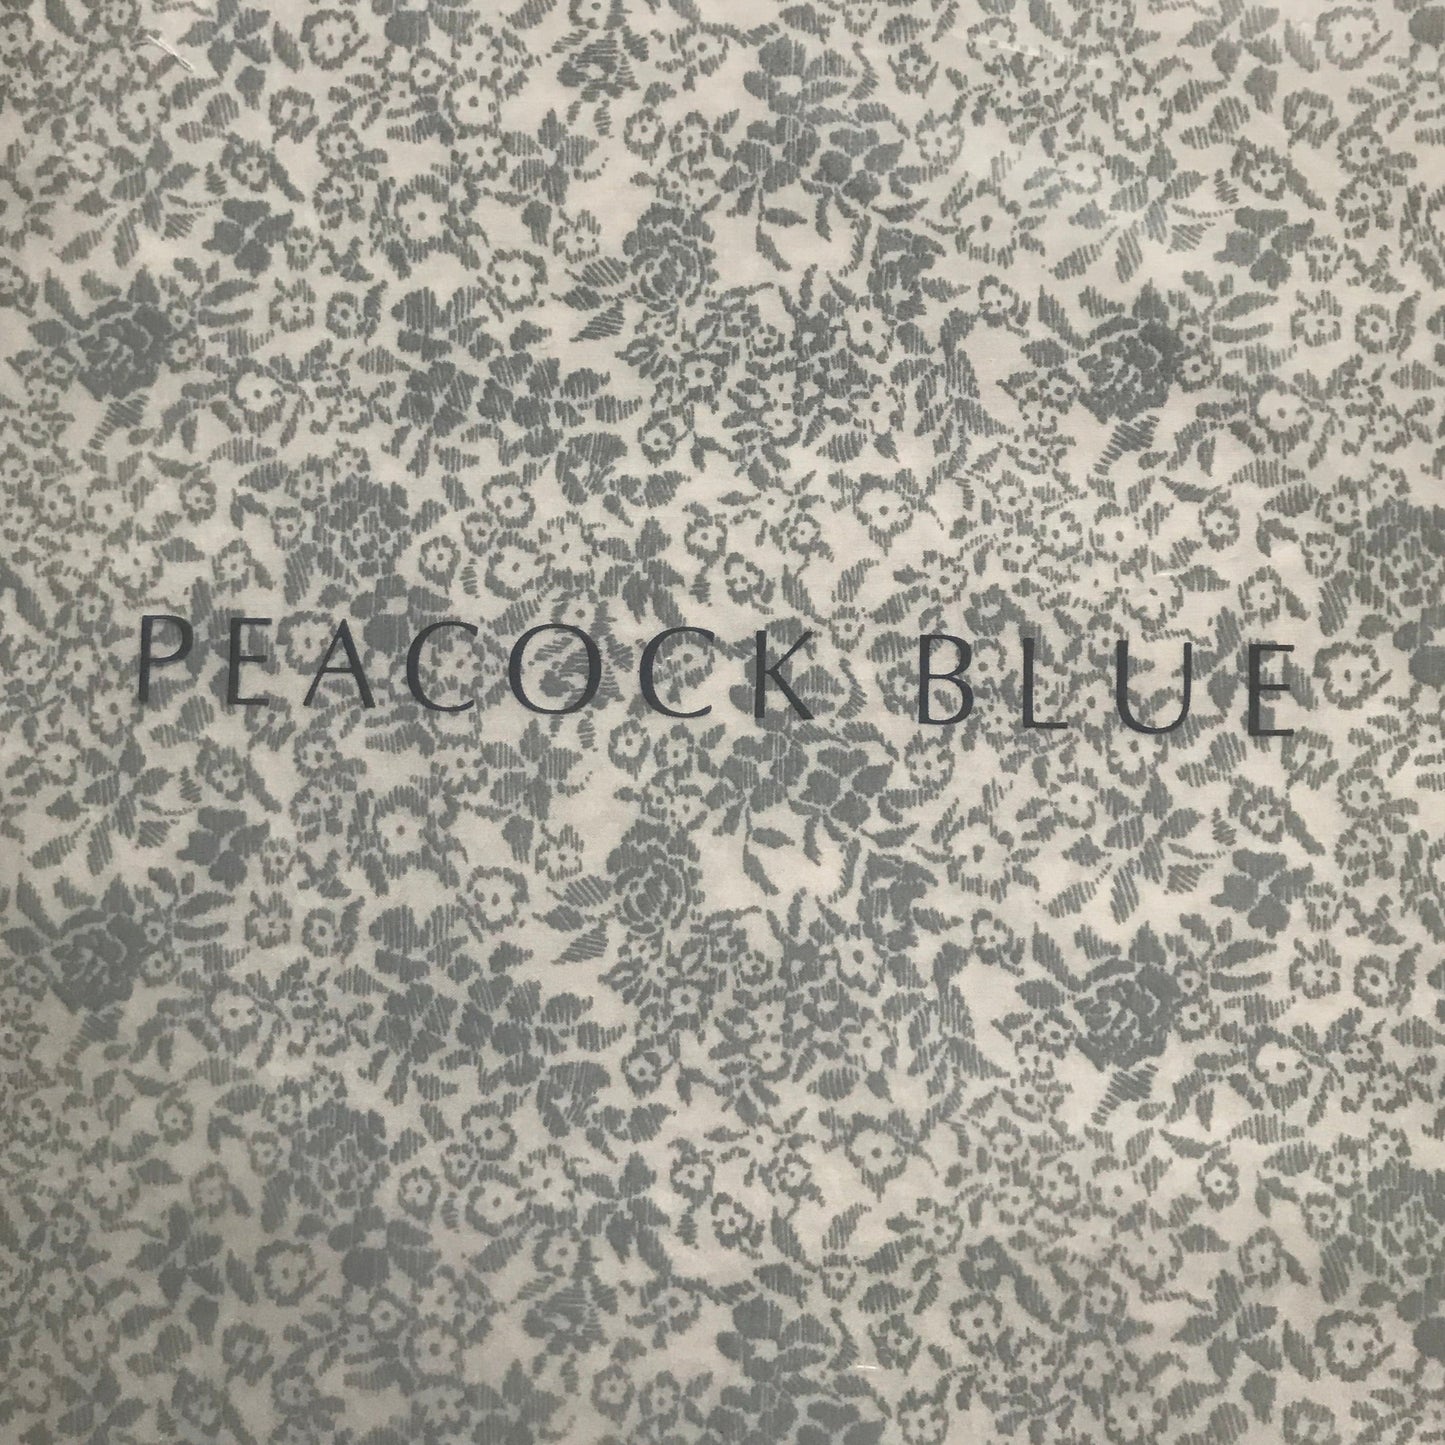 Vermont Floral Duvet Set by Peacock Blue